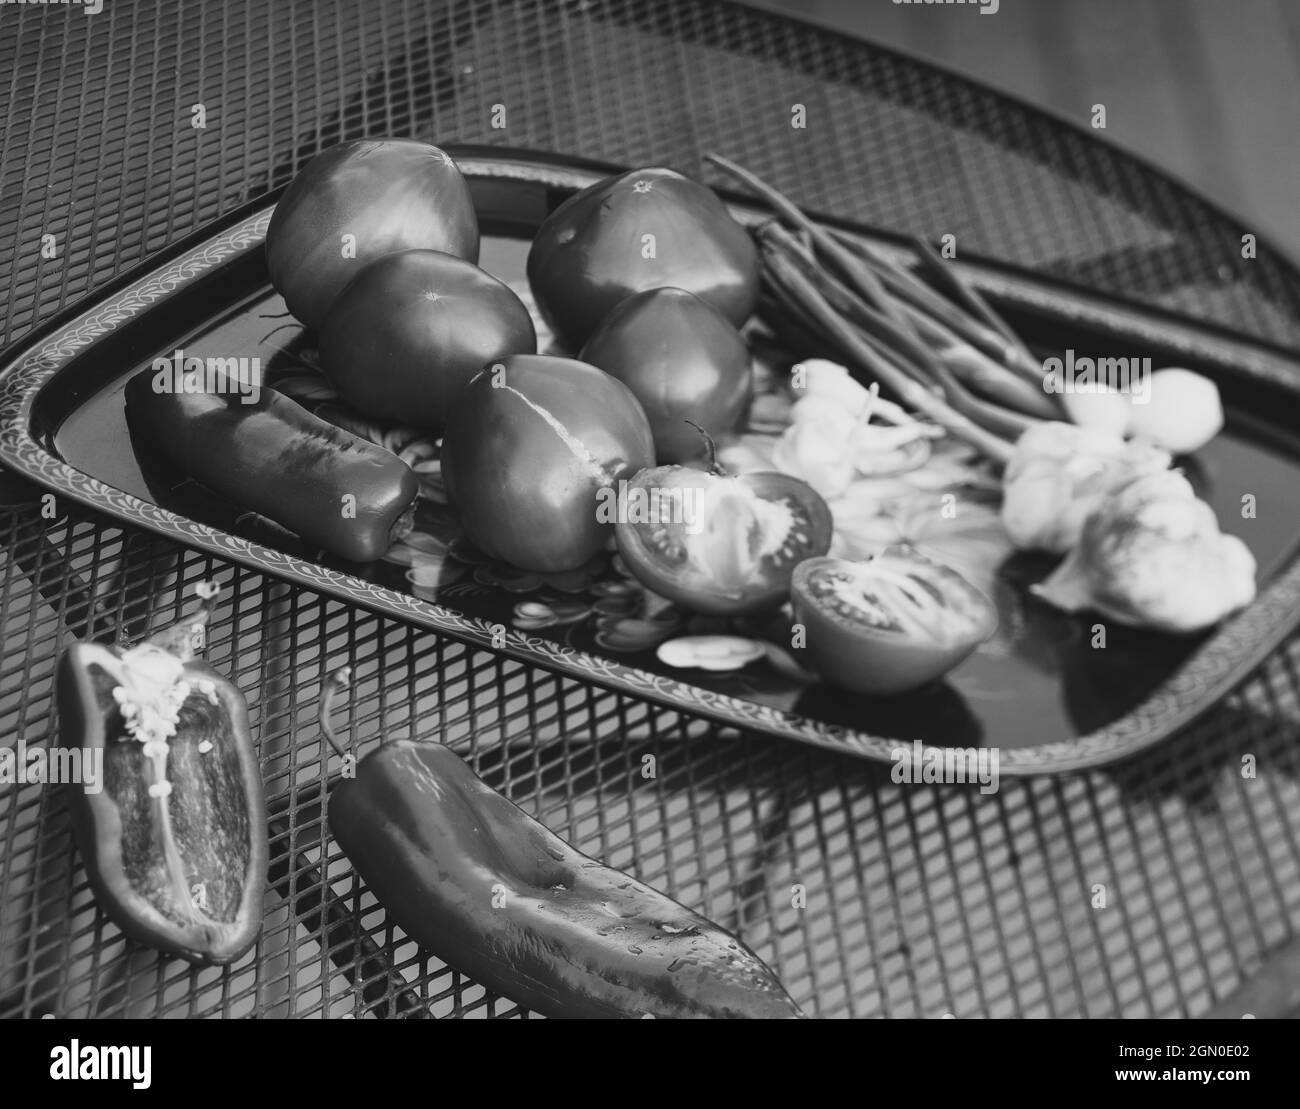 Tomaten, Knoblauch, grüne Zwiebeln auf Tablett. BCLose-up. Schwarz und Weiß. Stockfoto